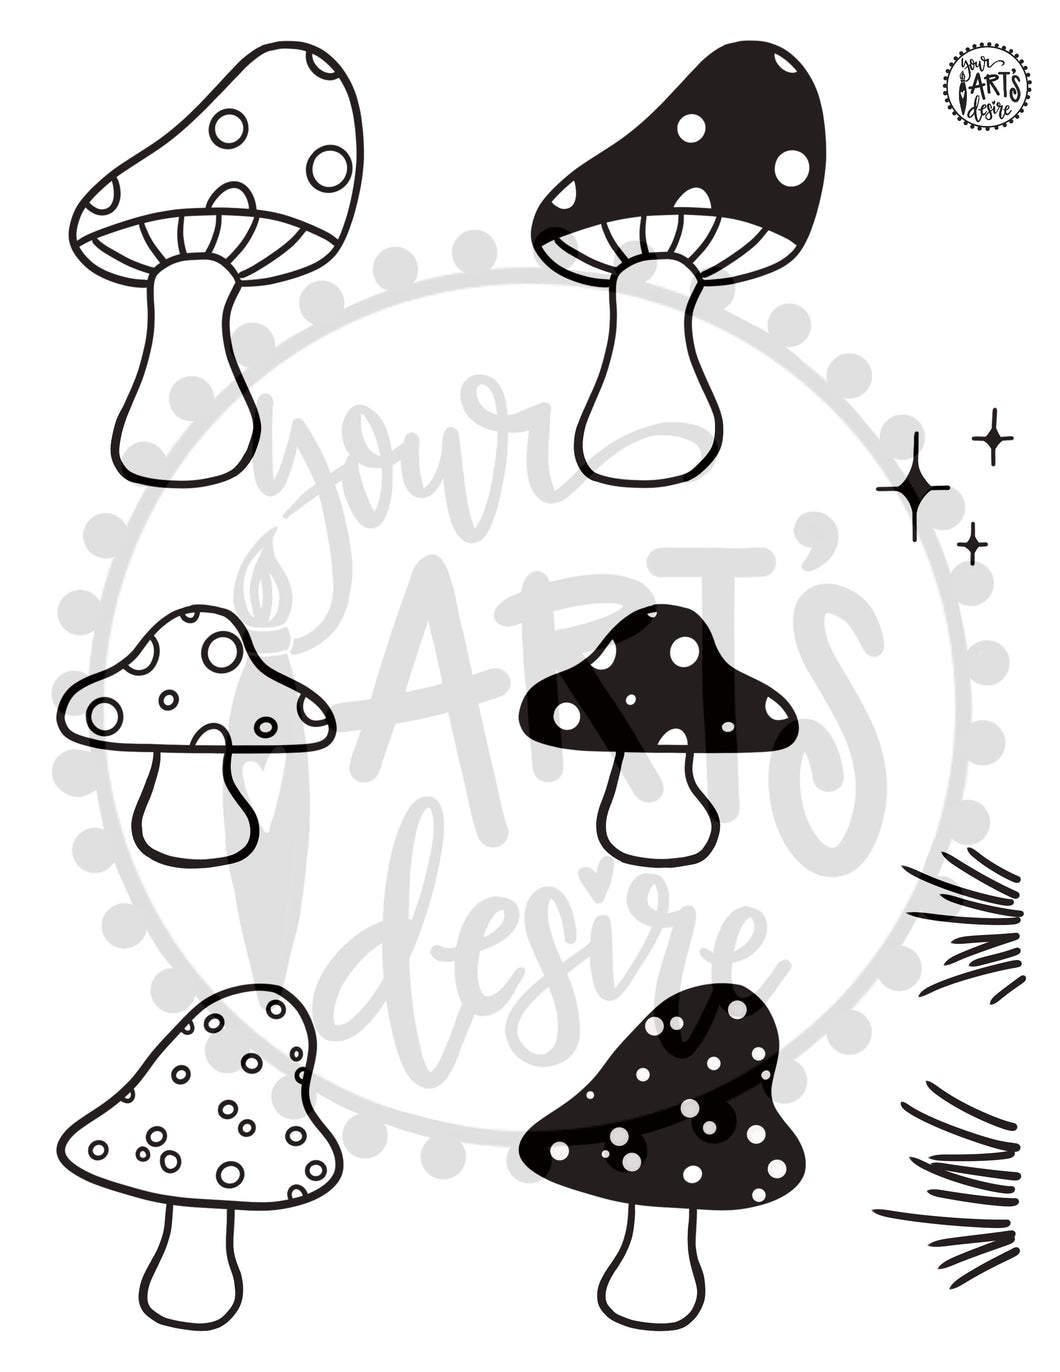 Mushrooms - 1